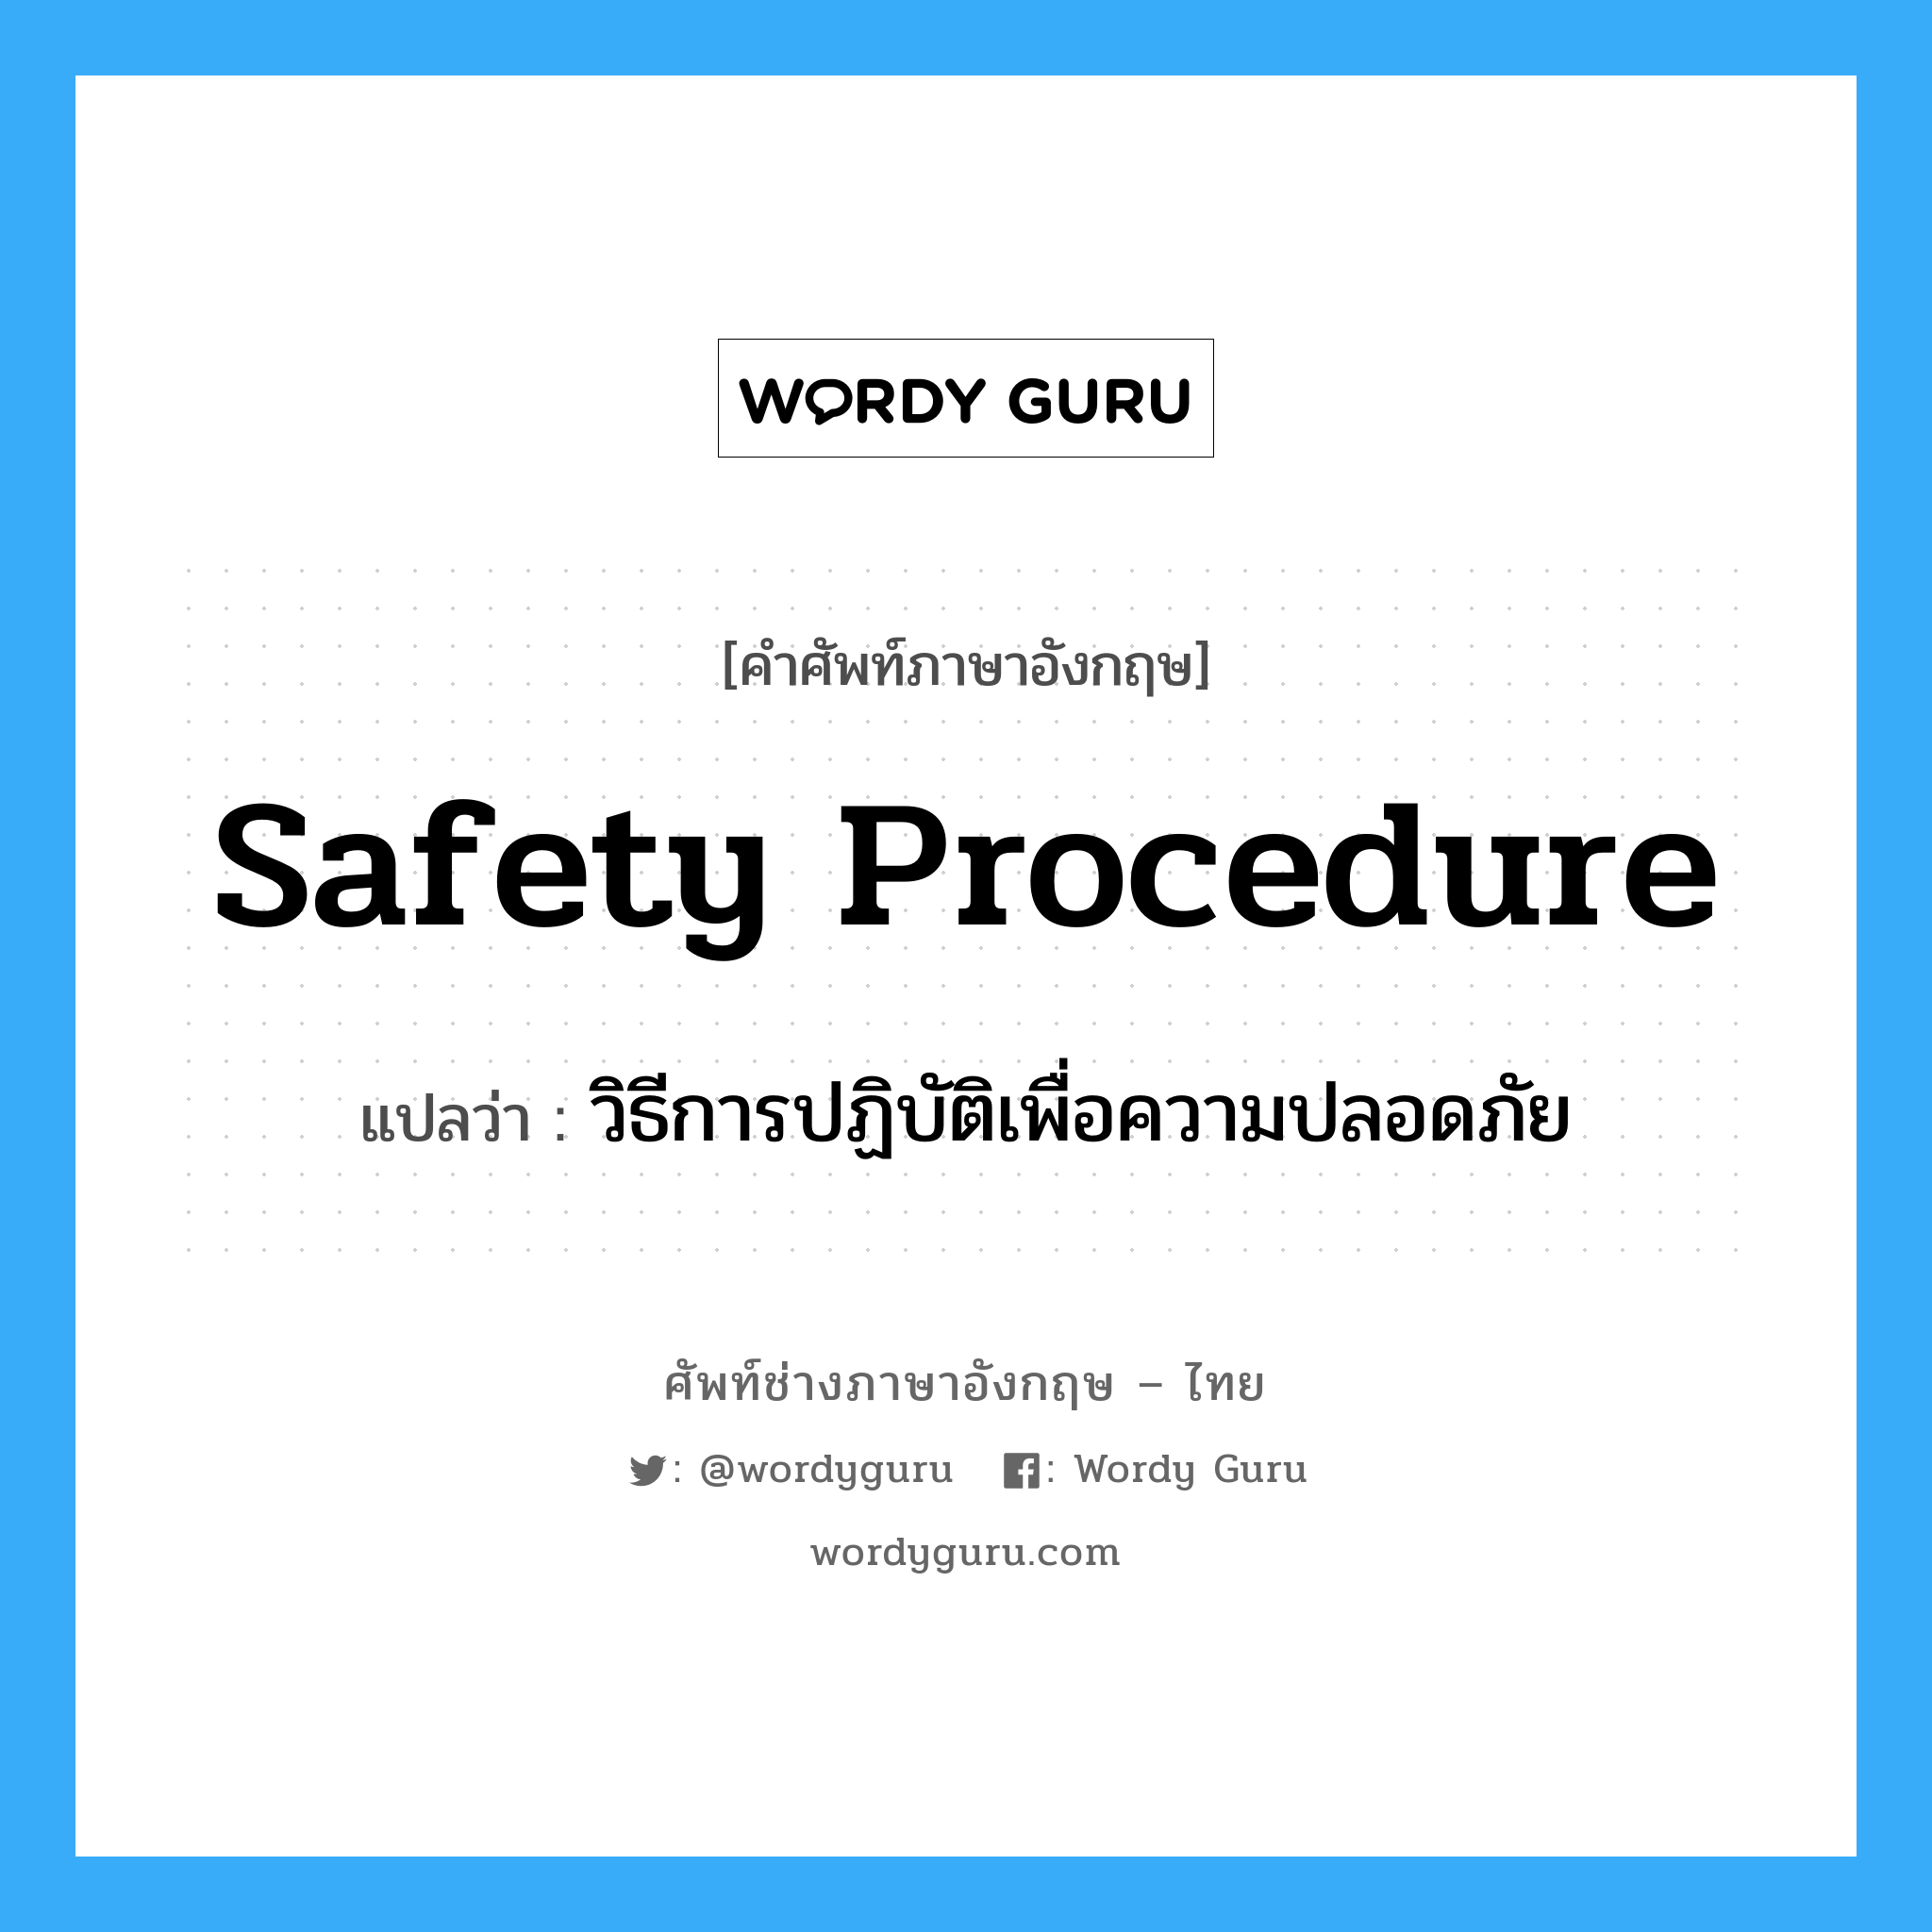 วิธีการปฏิบัติเพื่อความปลอดภัย ภาษาอังกฤษ?, คำศัพท์ช่างภาษาอังกฤษ - ไทย วิธีการปฏิบัติเพื่อความปลอดภัย คำศัพท์ภาษาอังกฤษ วิธีการปฏิบัติเพื่อความปลอดภัย แปลว่า Safety Procedure